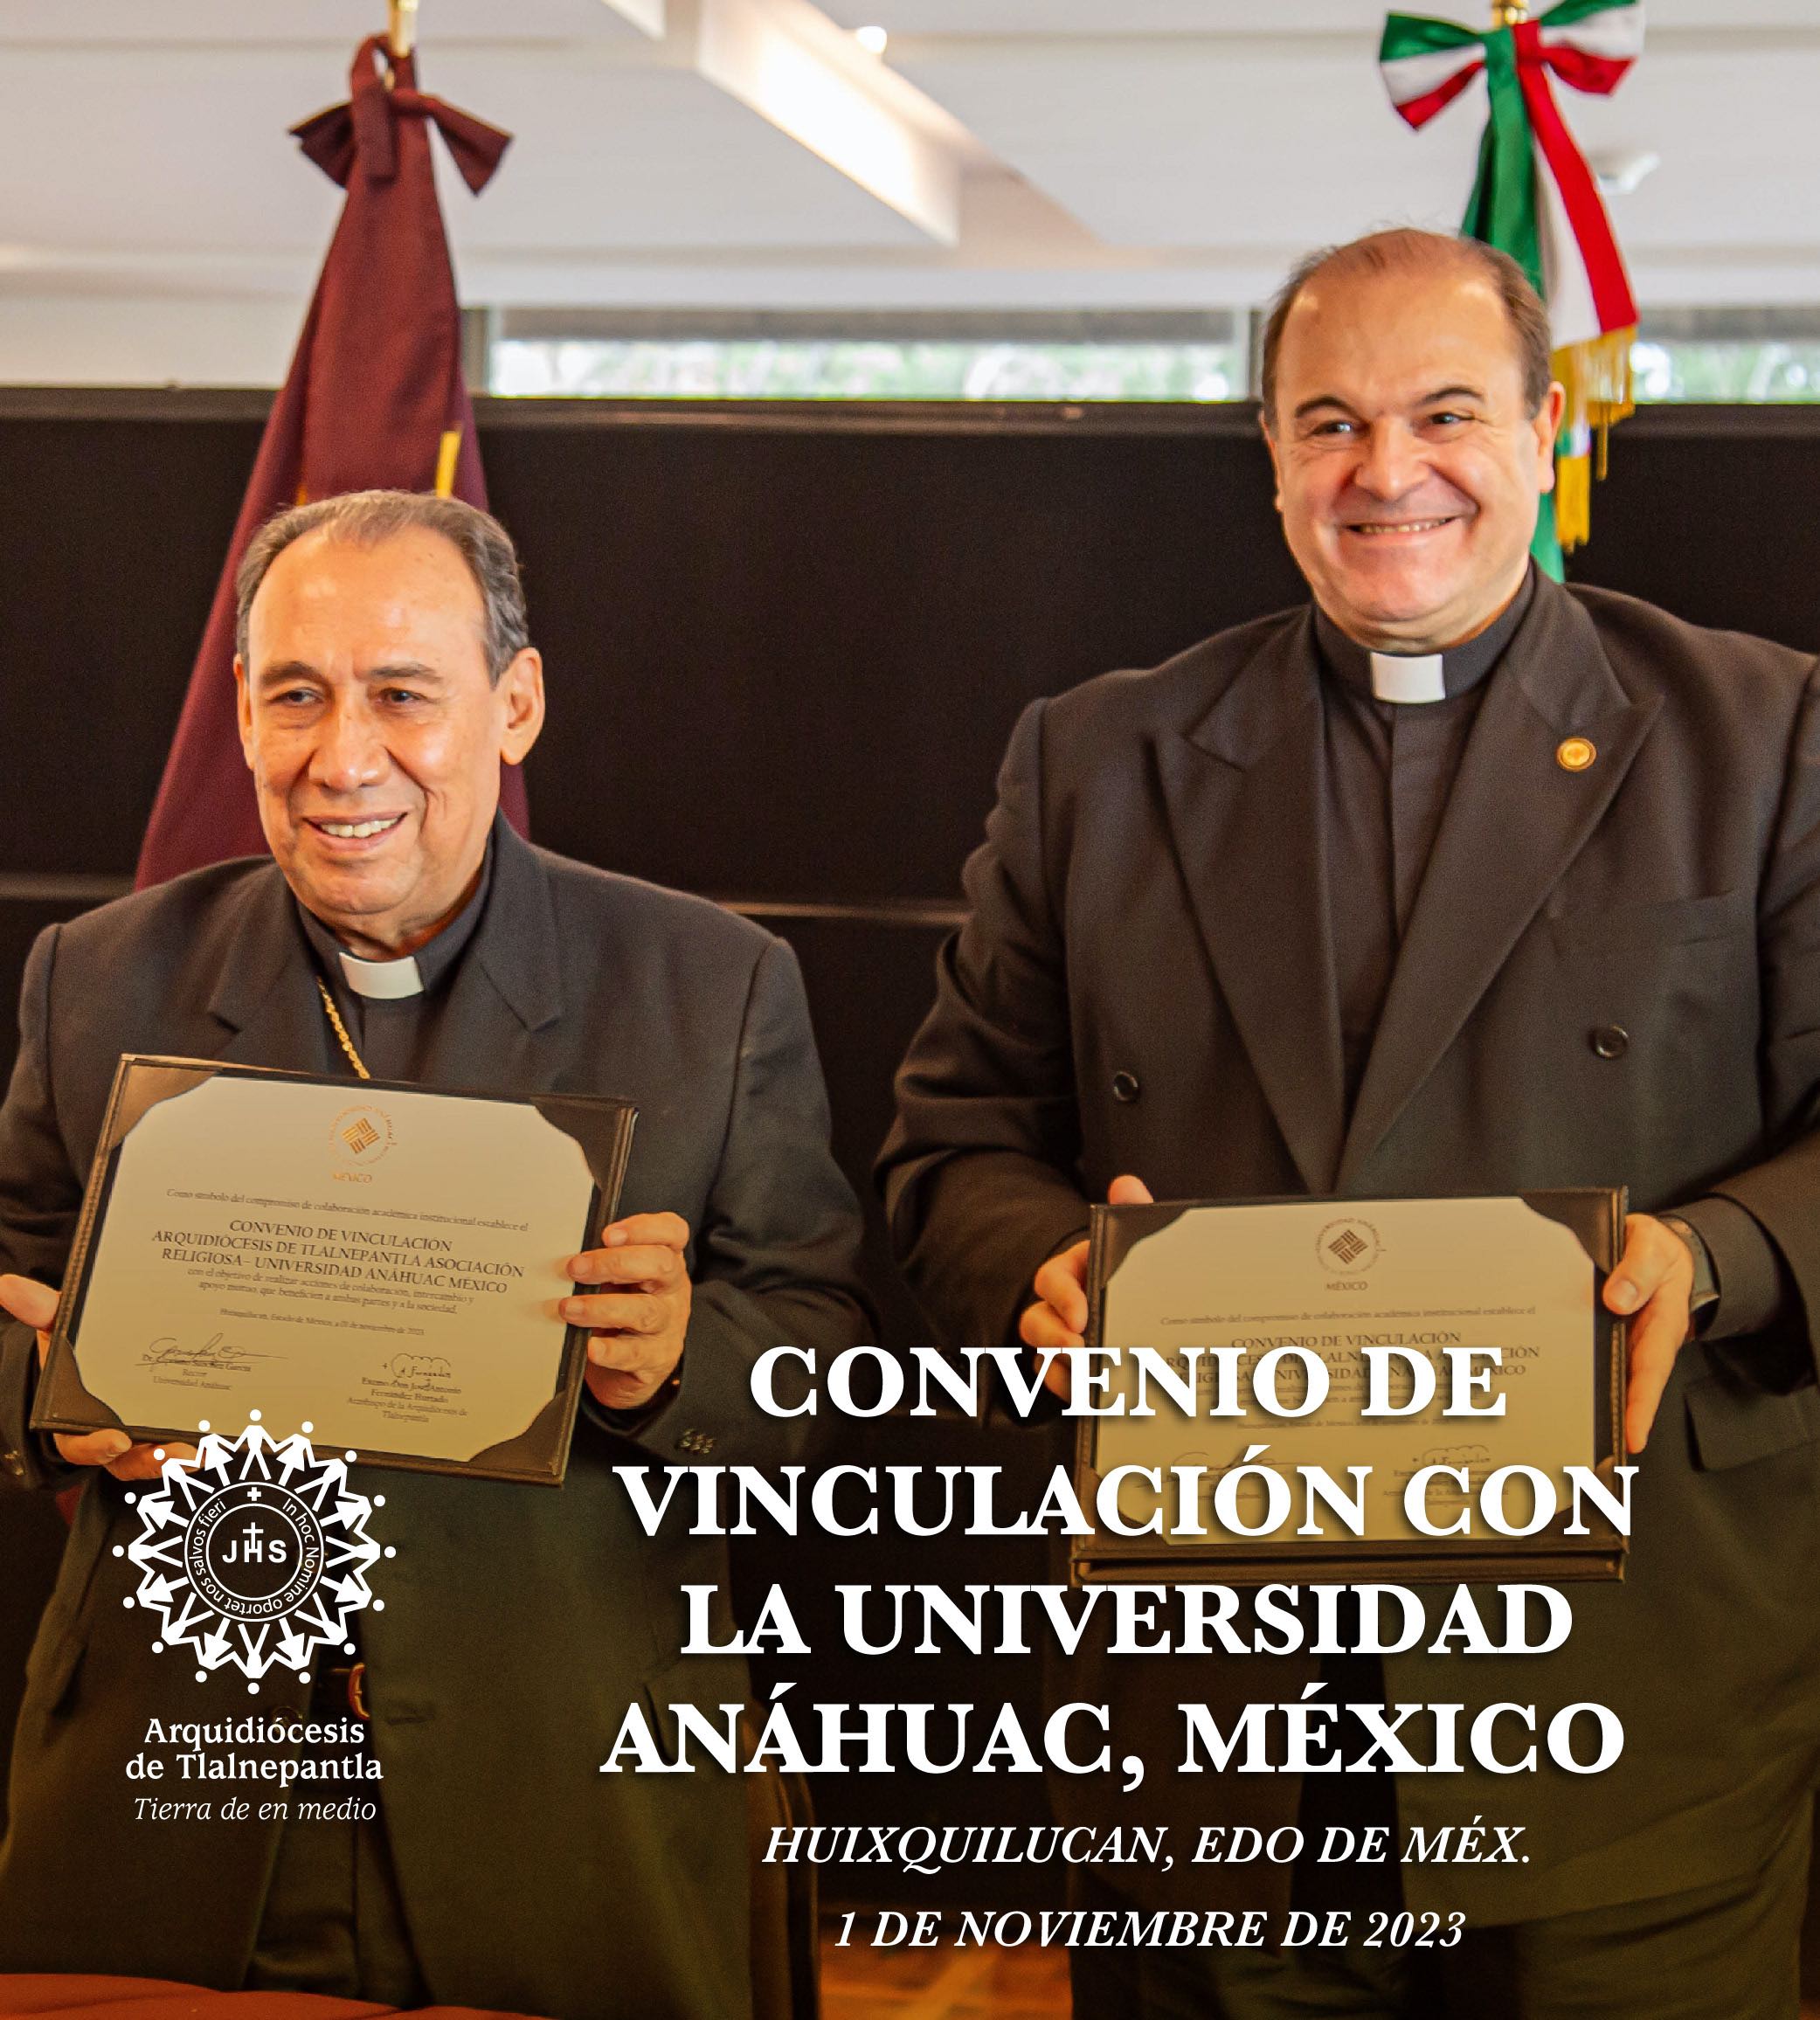 Convenio de vinculación con la Universidad Anáhuac, México